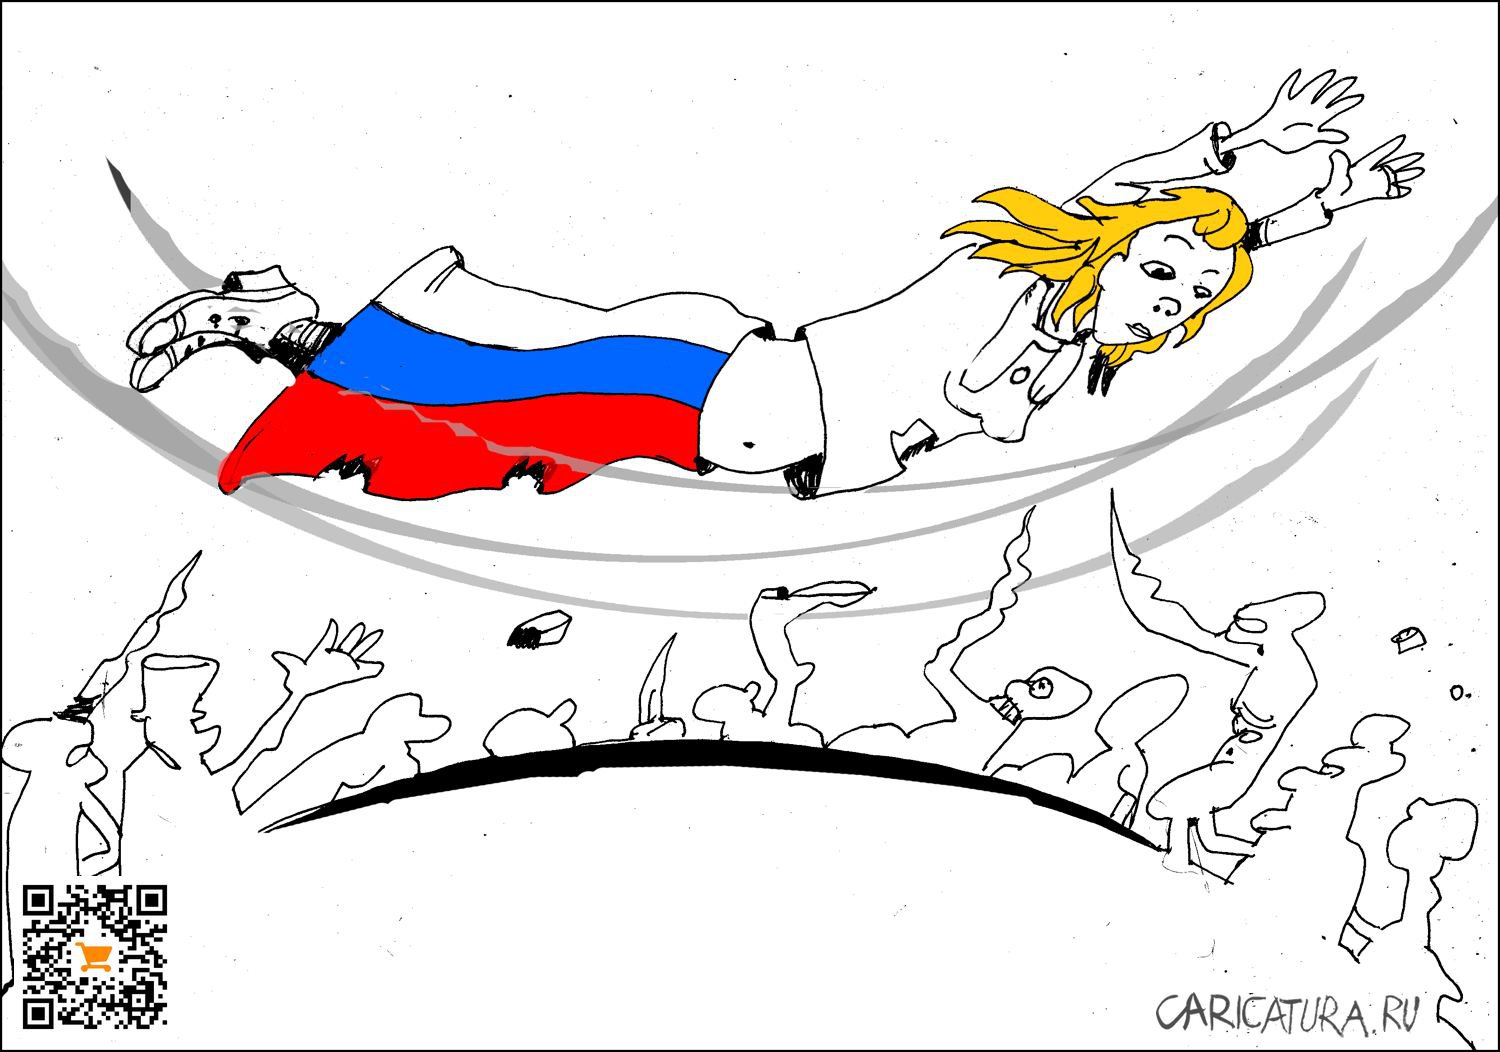 Карикатура "Групповой Запад", Александр Уваров